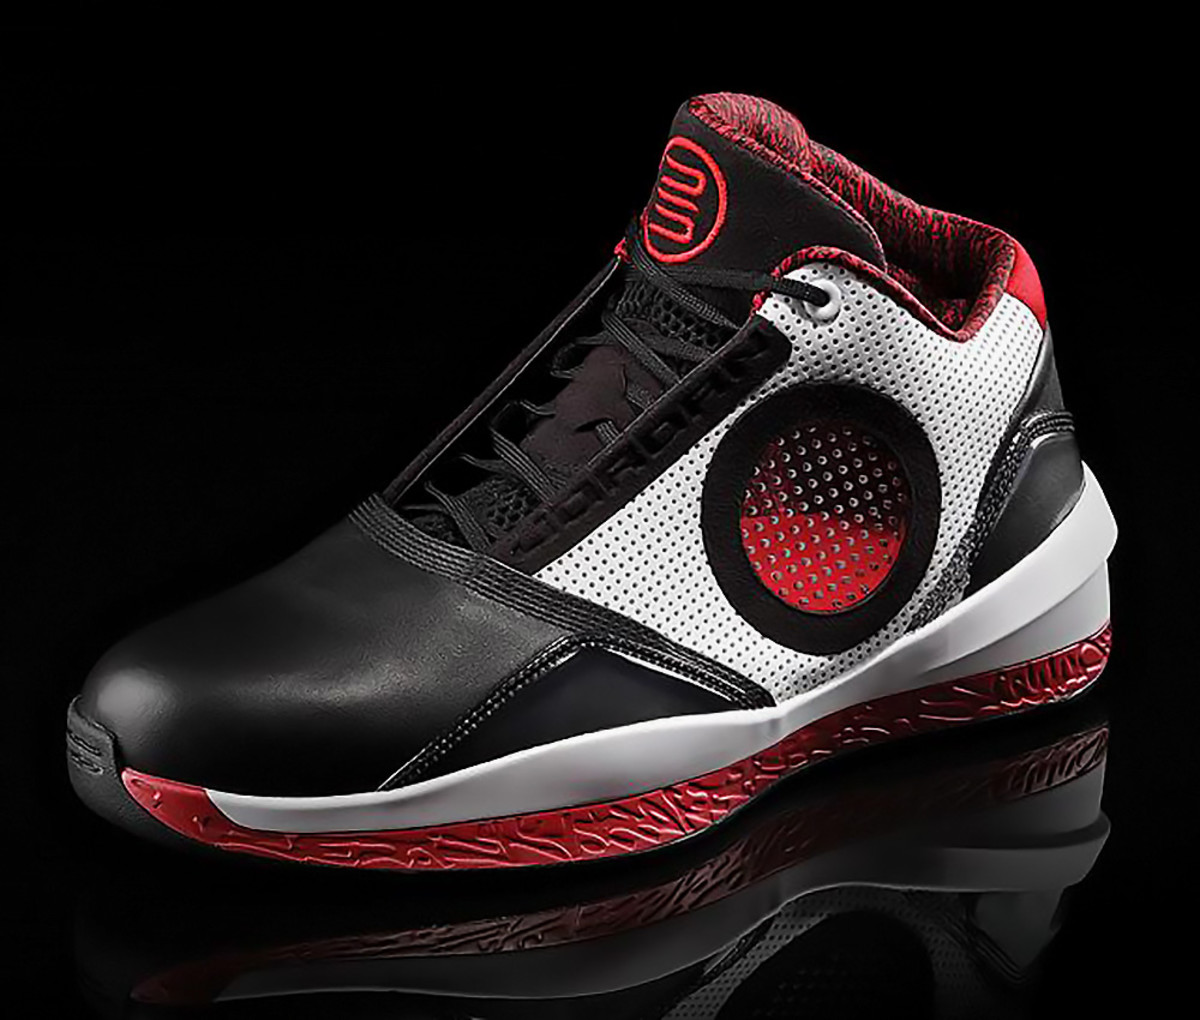 33 Air Jordan sneakers - Sports Illustrated